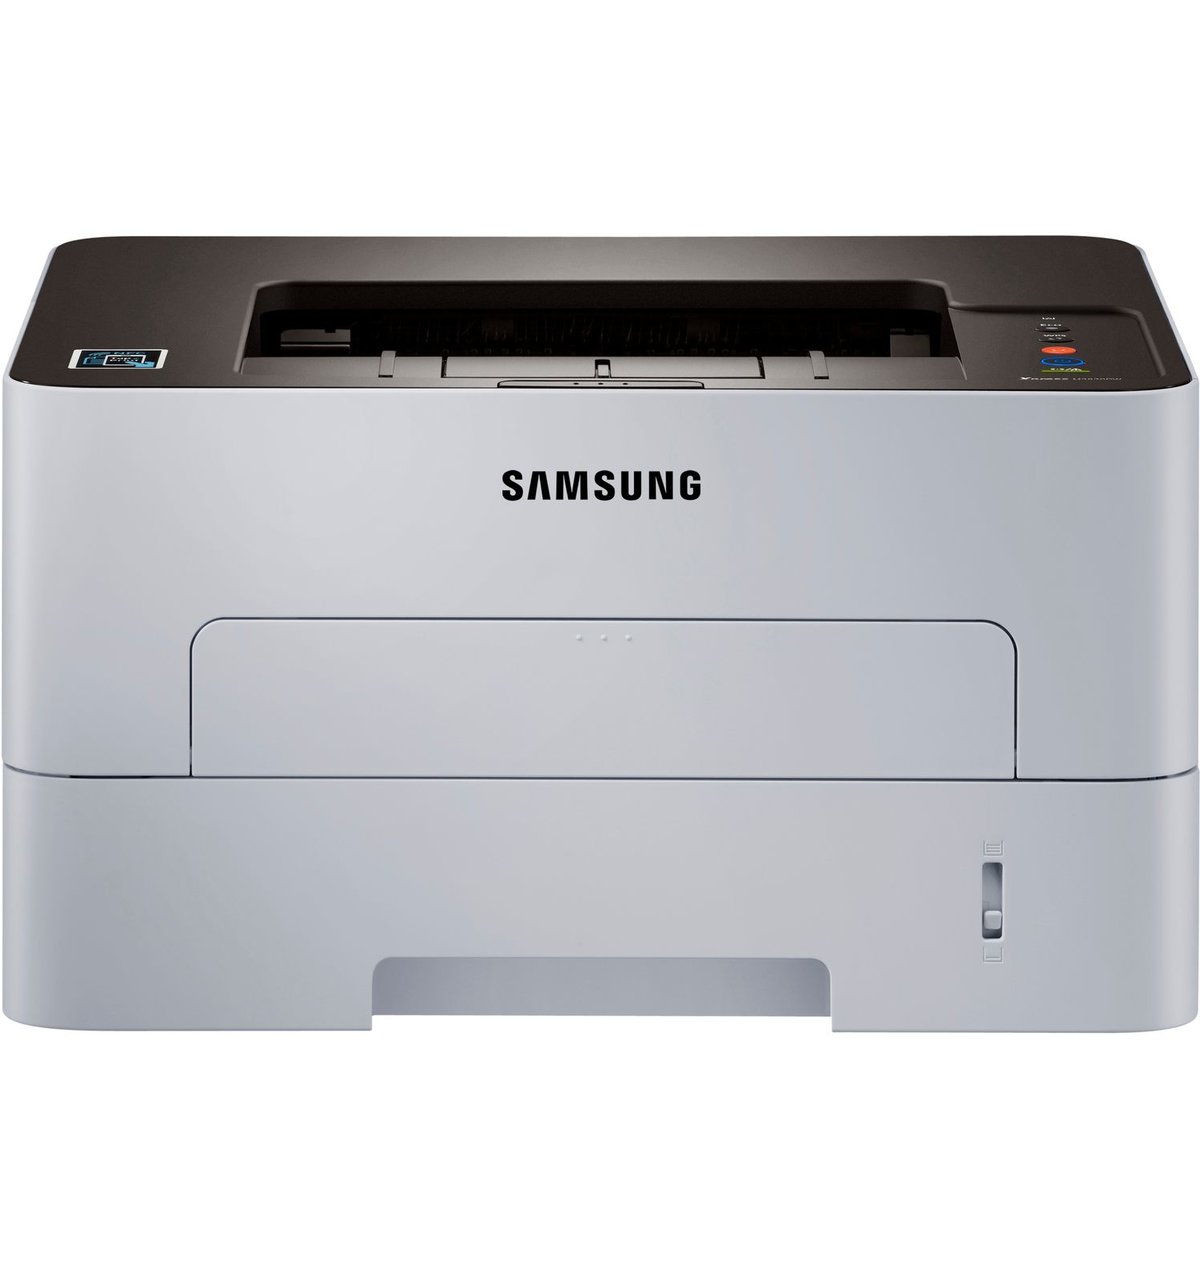 Лазерный принтер м. Samsung Xpress m2830dw. Samsung SL-m2830dw. Принтер Xpress m2830dw. Samsung Xpress SL-m2830dw.